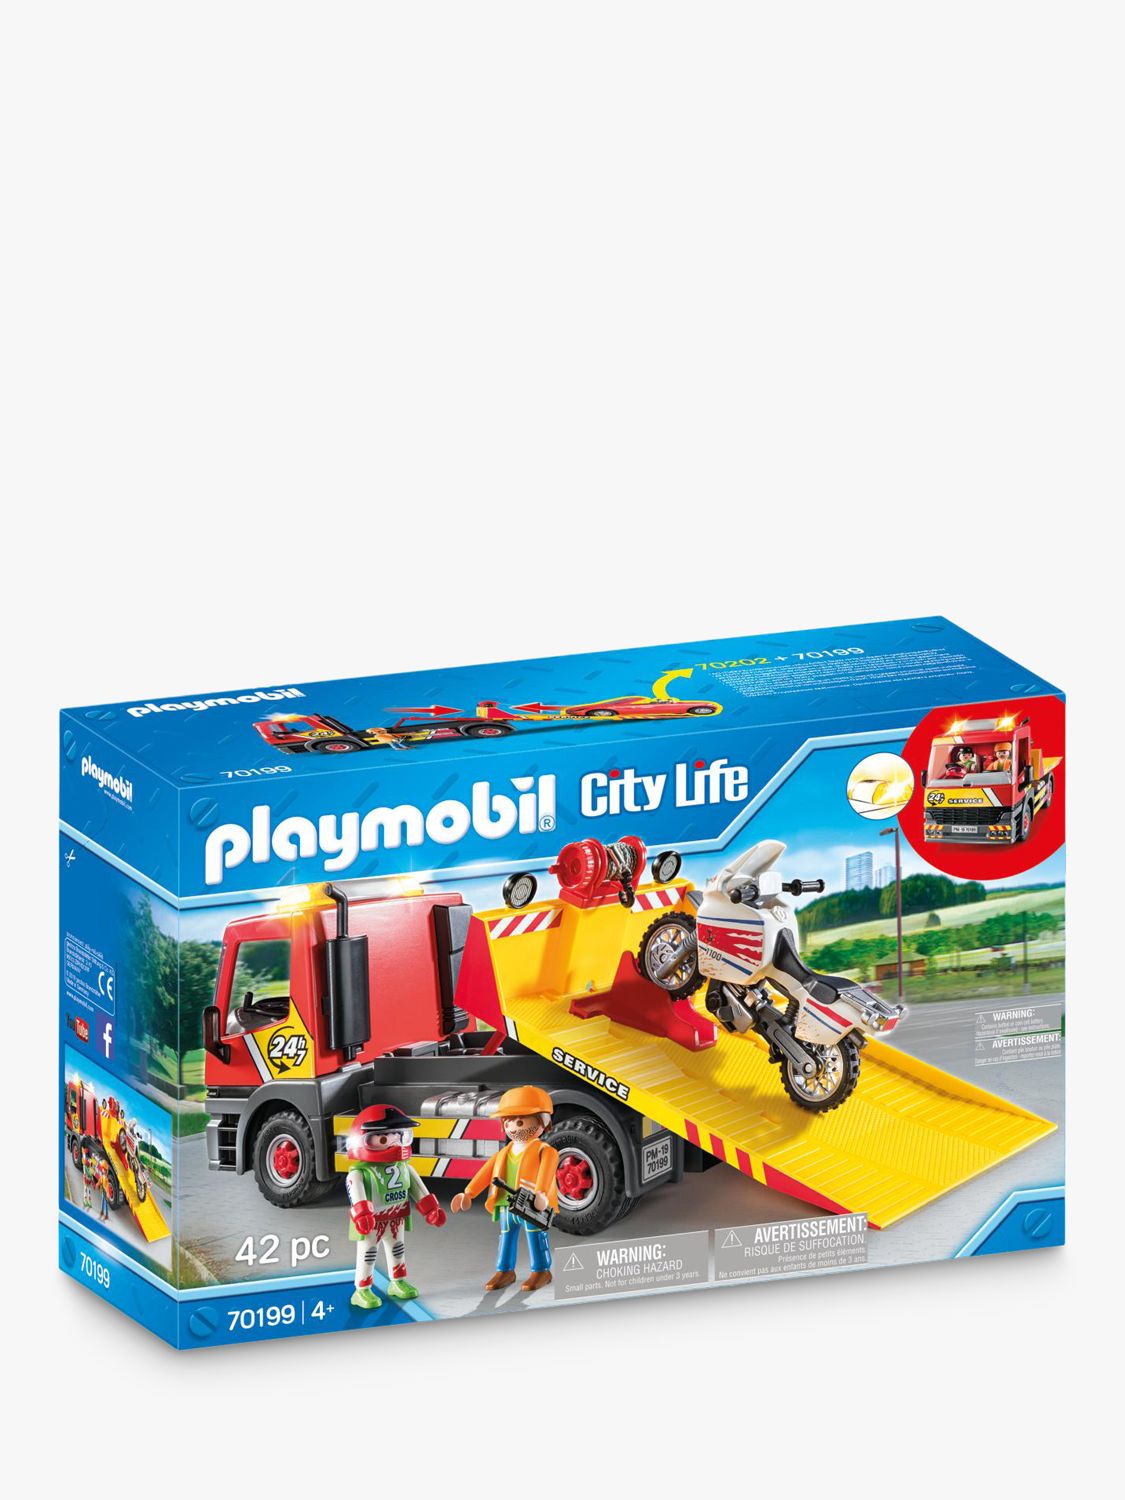 70199 playmobil